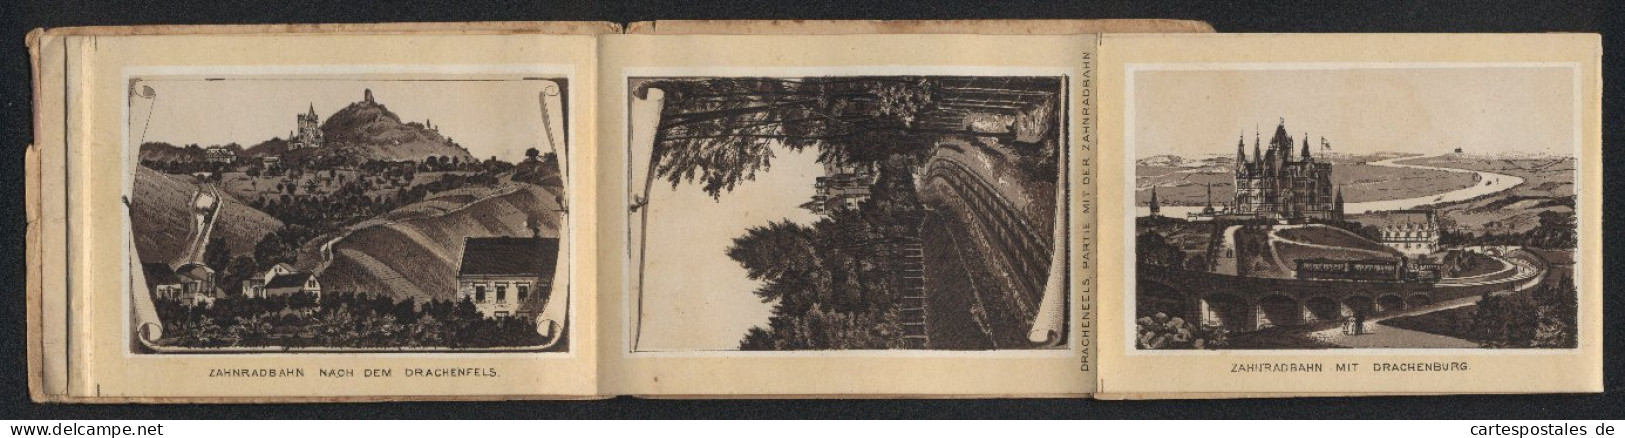 Leporello-Album Drachenfels Mit 12 Lithographie-Ansichten, Zahnradbahn Mit Drachenburg BahnhofRolandseck, Rolandsbogen  - Litografía